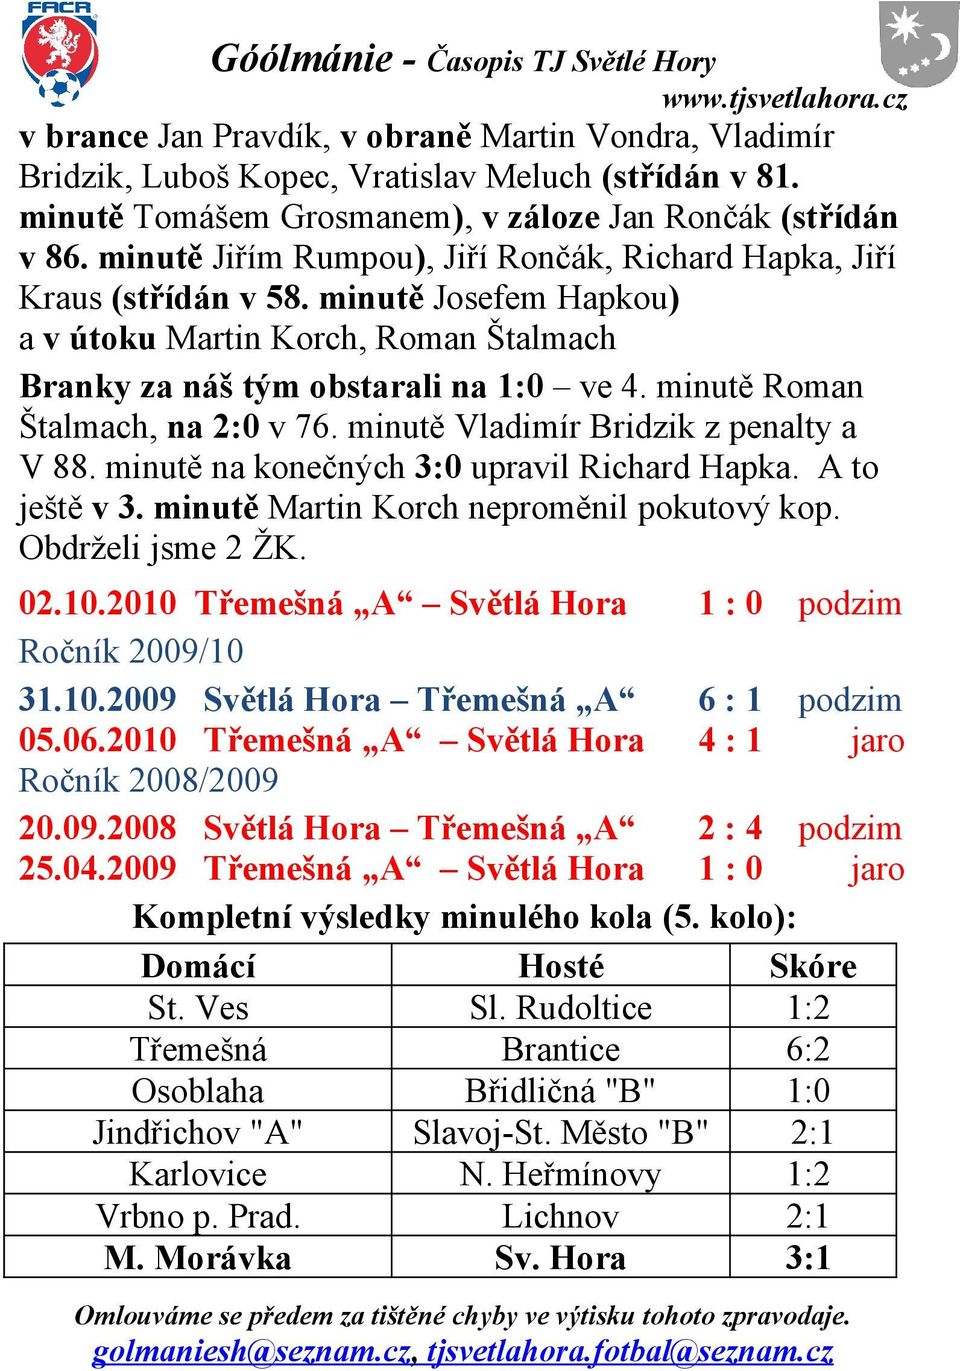 minutě Roman Štalmach, na 2:0 v 76. minutě Vladimír Bridzik z penalty a V 88. minutě na konečných 3:0 upravil Richard Hapka. A to ještě v 3. minutě Martin Korch neproměnil pokutový kop.